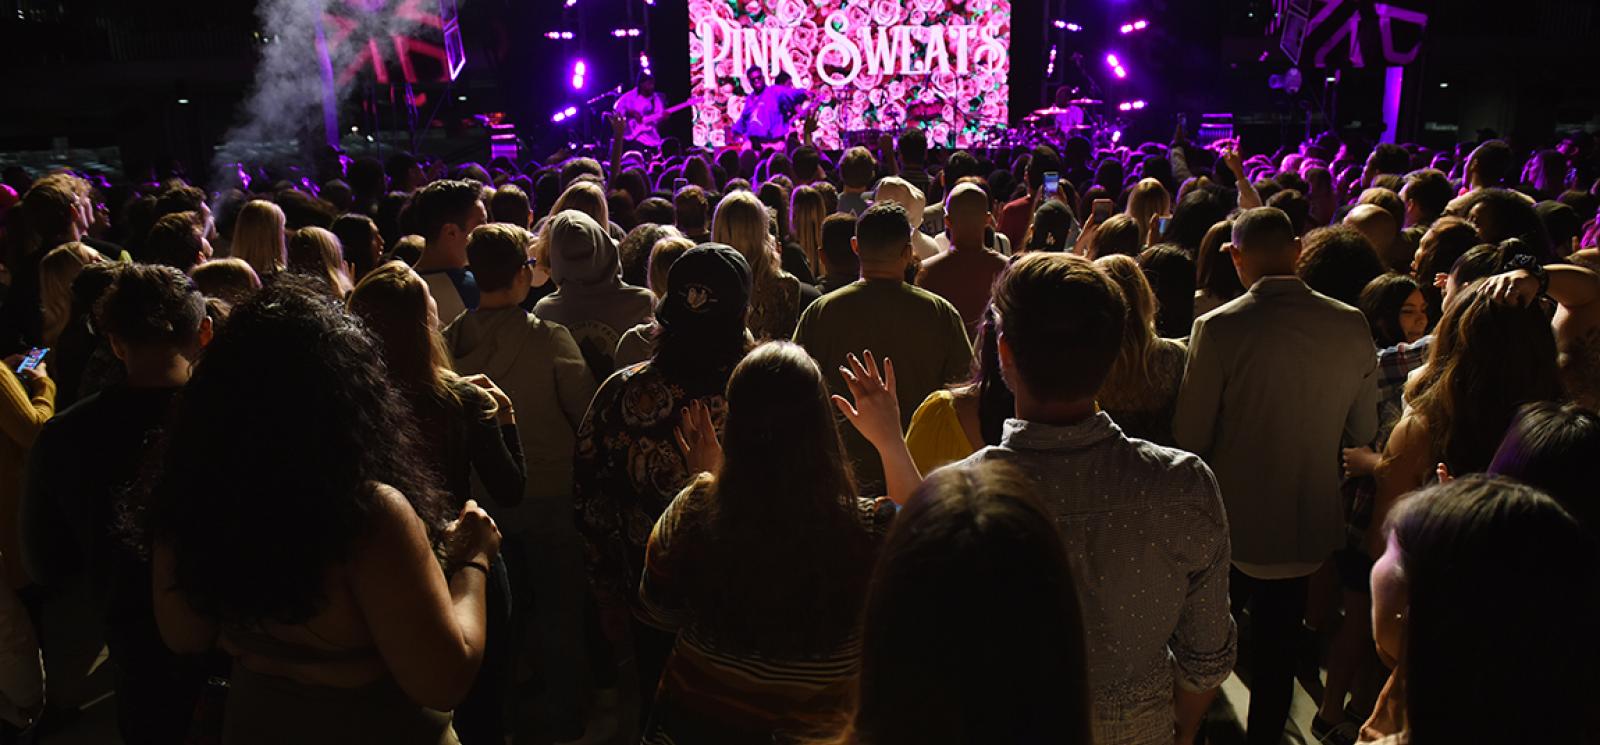 Pink Sweat$ Concert